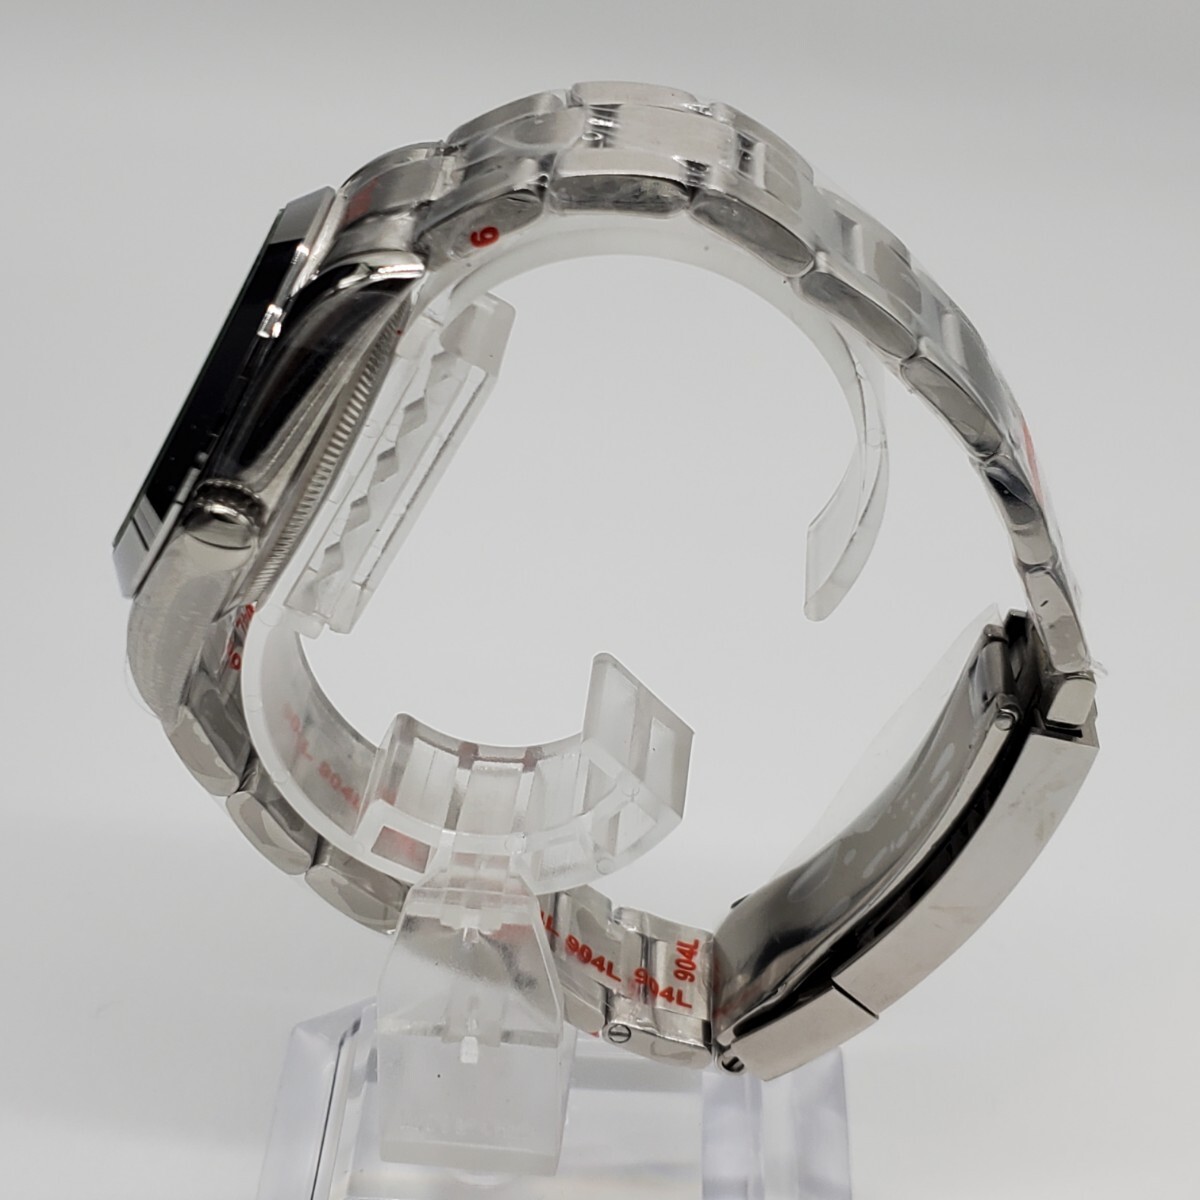 新品 自動巻 LARIMOKER ノーロゴ 黒&緑 36mm セイコー NH35 メンズ腕時計 機械式 サファイア風防 シースルーバック仕様_画像3